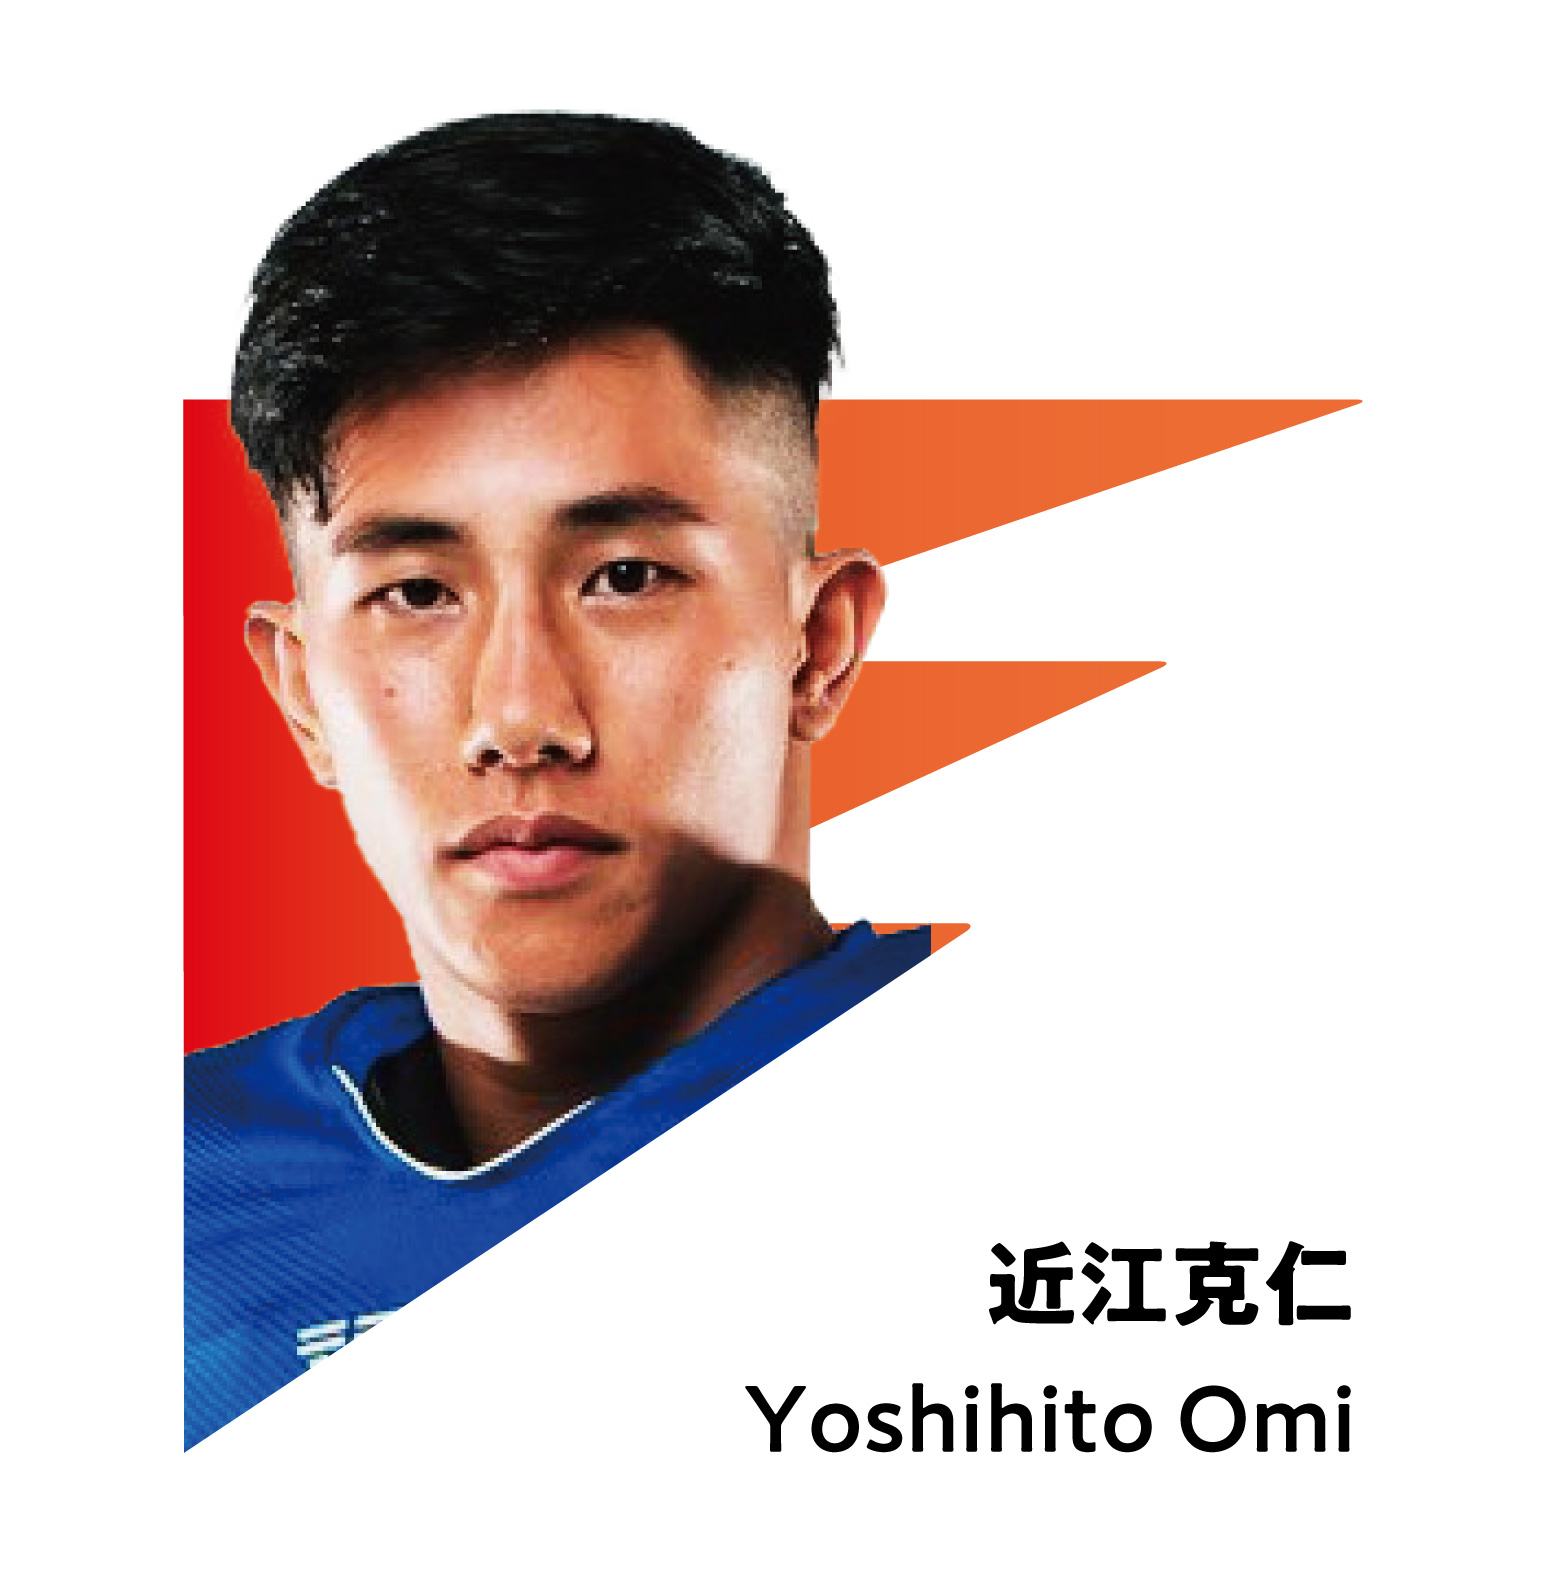 YOSHIHITO OMI